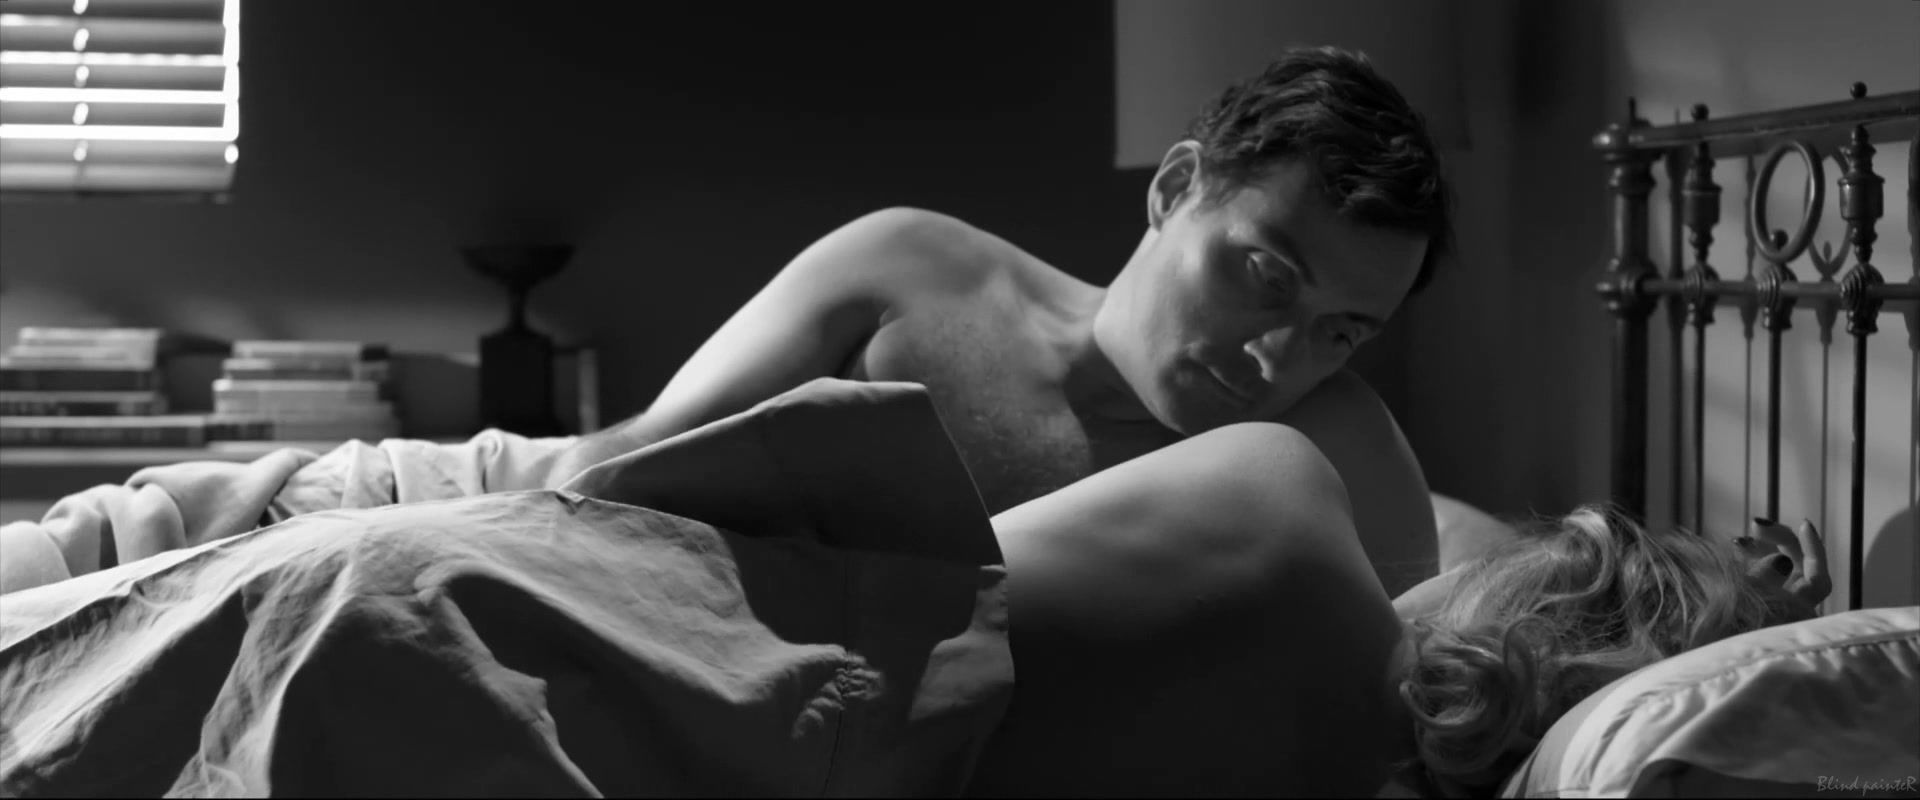 Tittyfuck Malin Akerman nude - Hotel Noir (2012) Celebrity Sex - 1